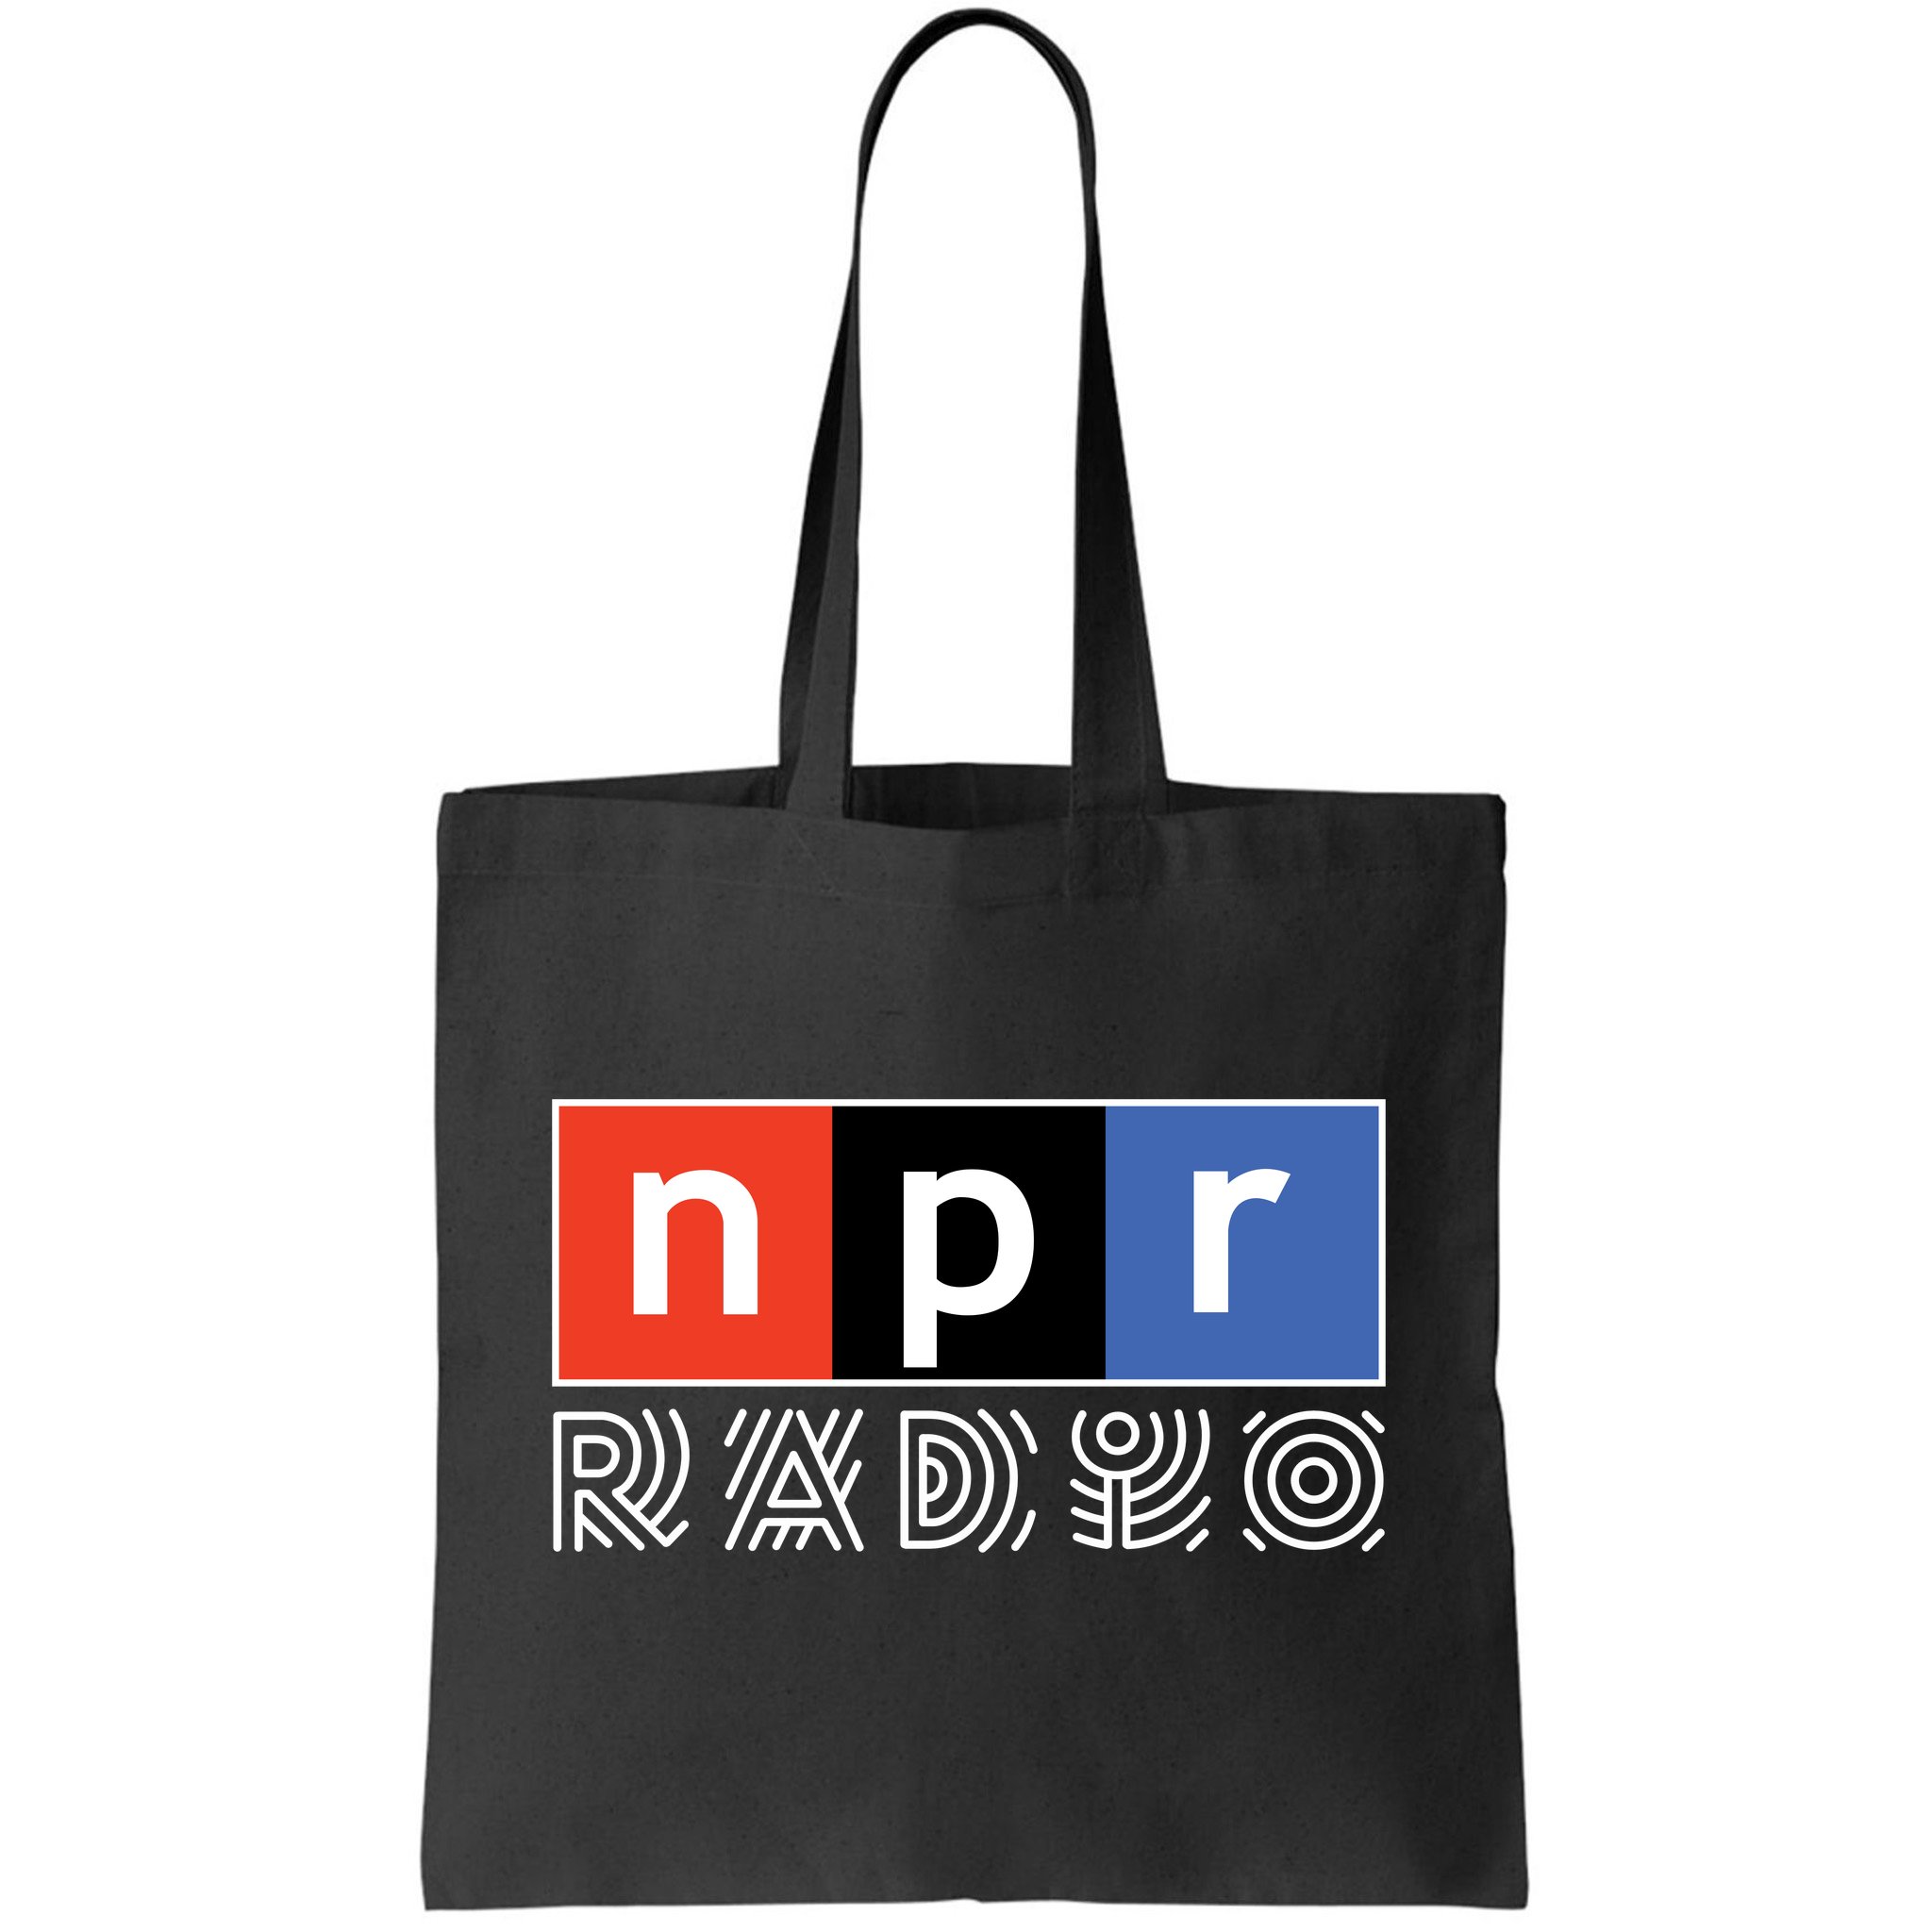 Totes & Bags - NPR Shop